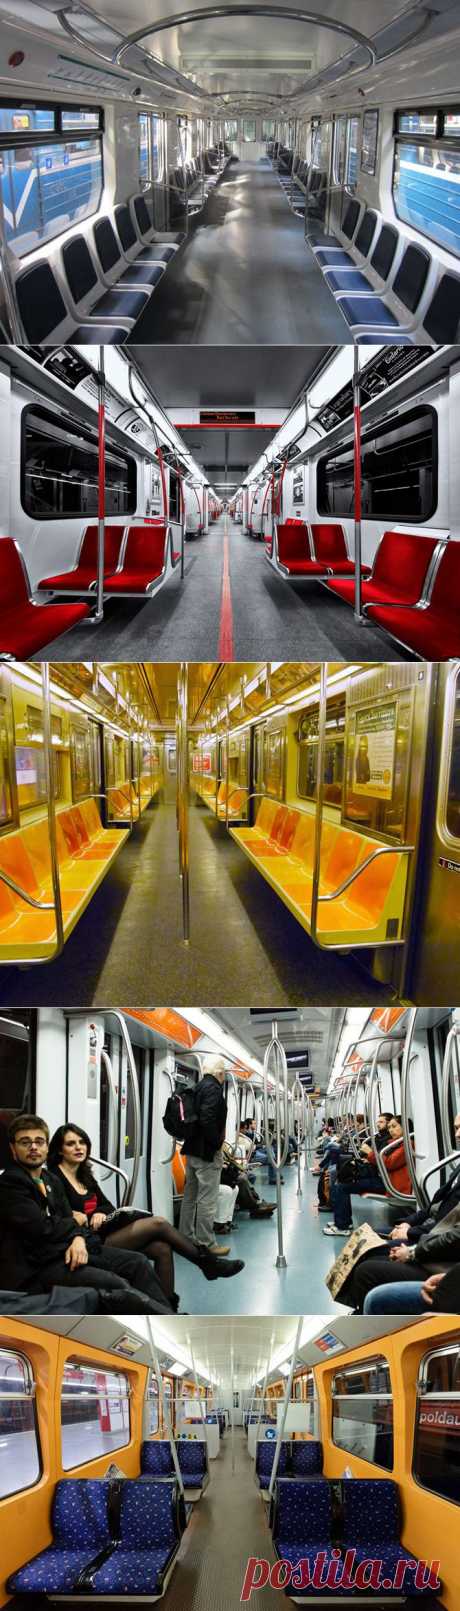 Как выглядят вагоны метро в разных странах / livejournal.com / Surfingbird.ru